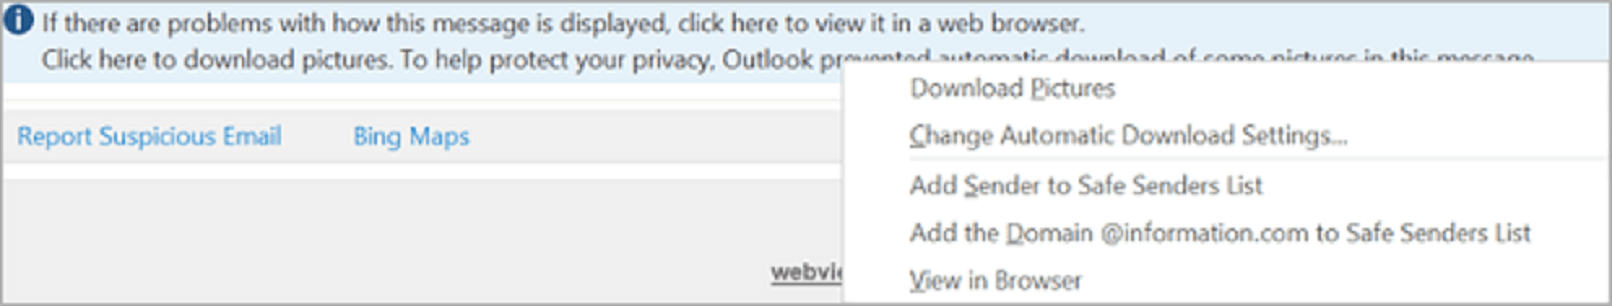 Az Outlook nem tud képeket letölteni